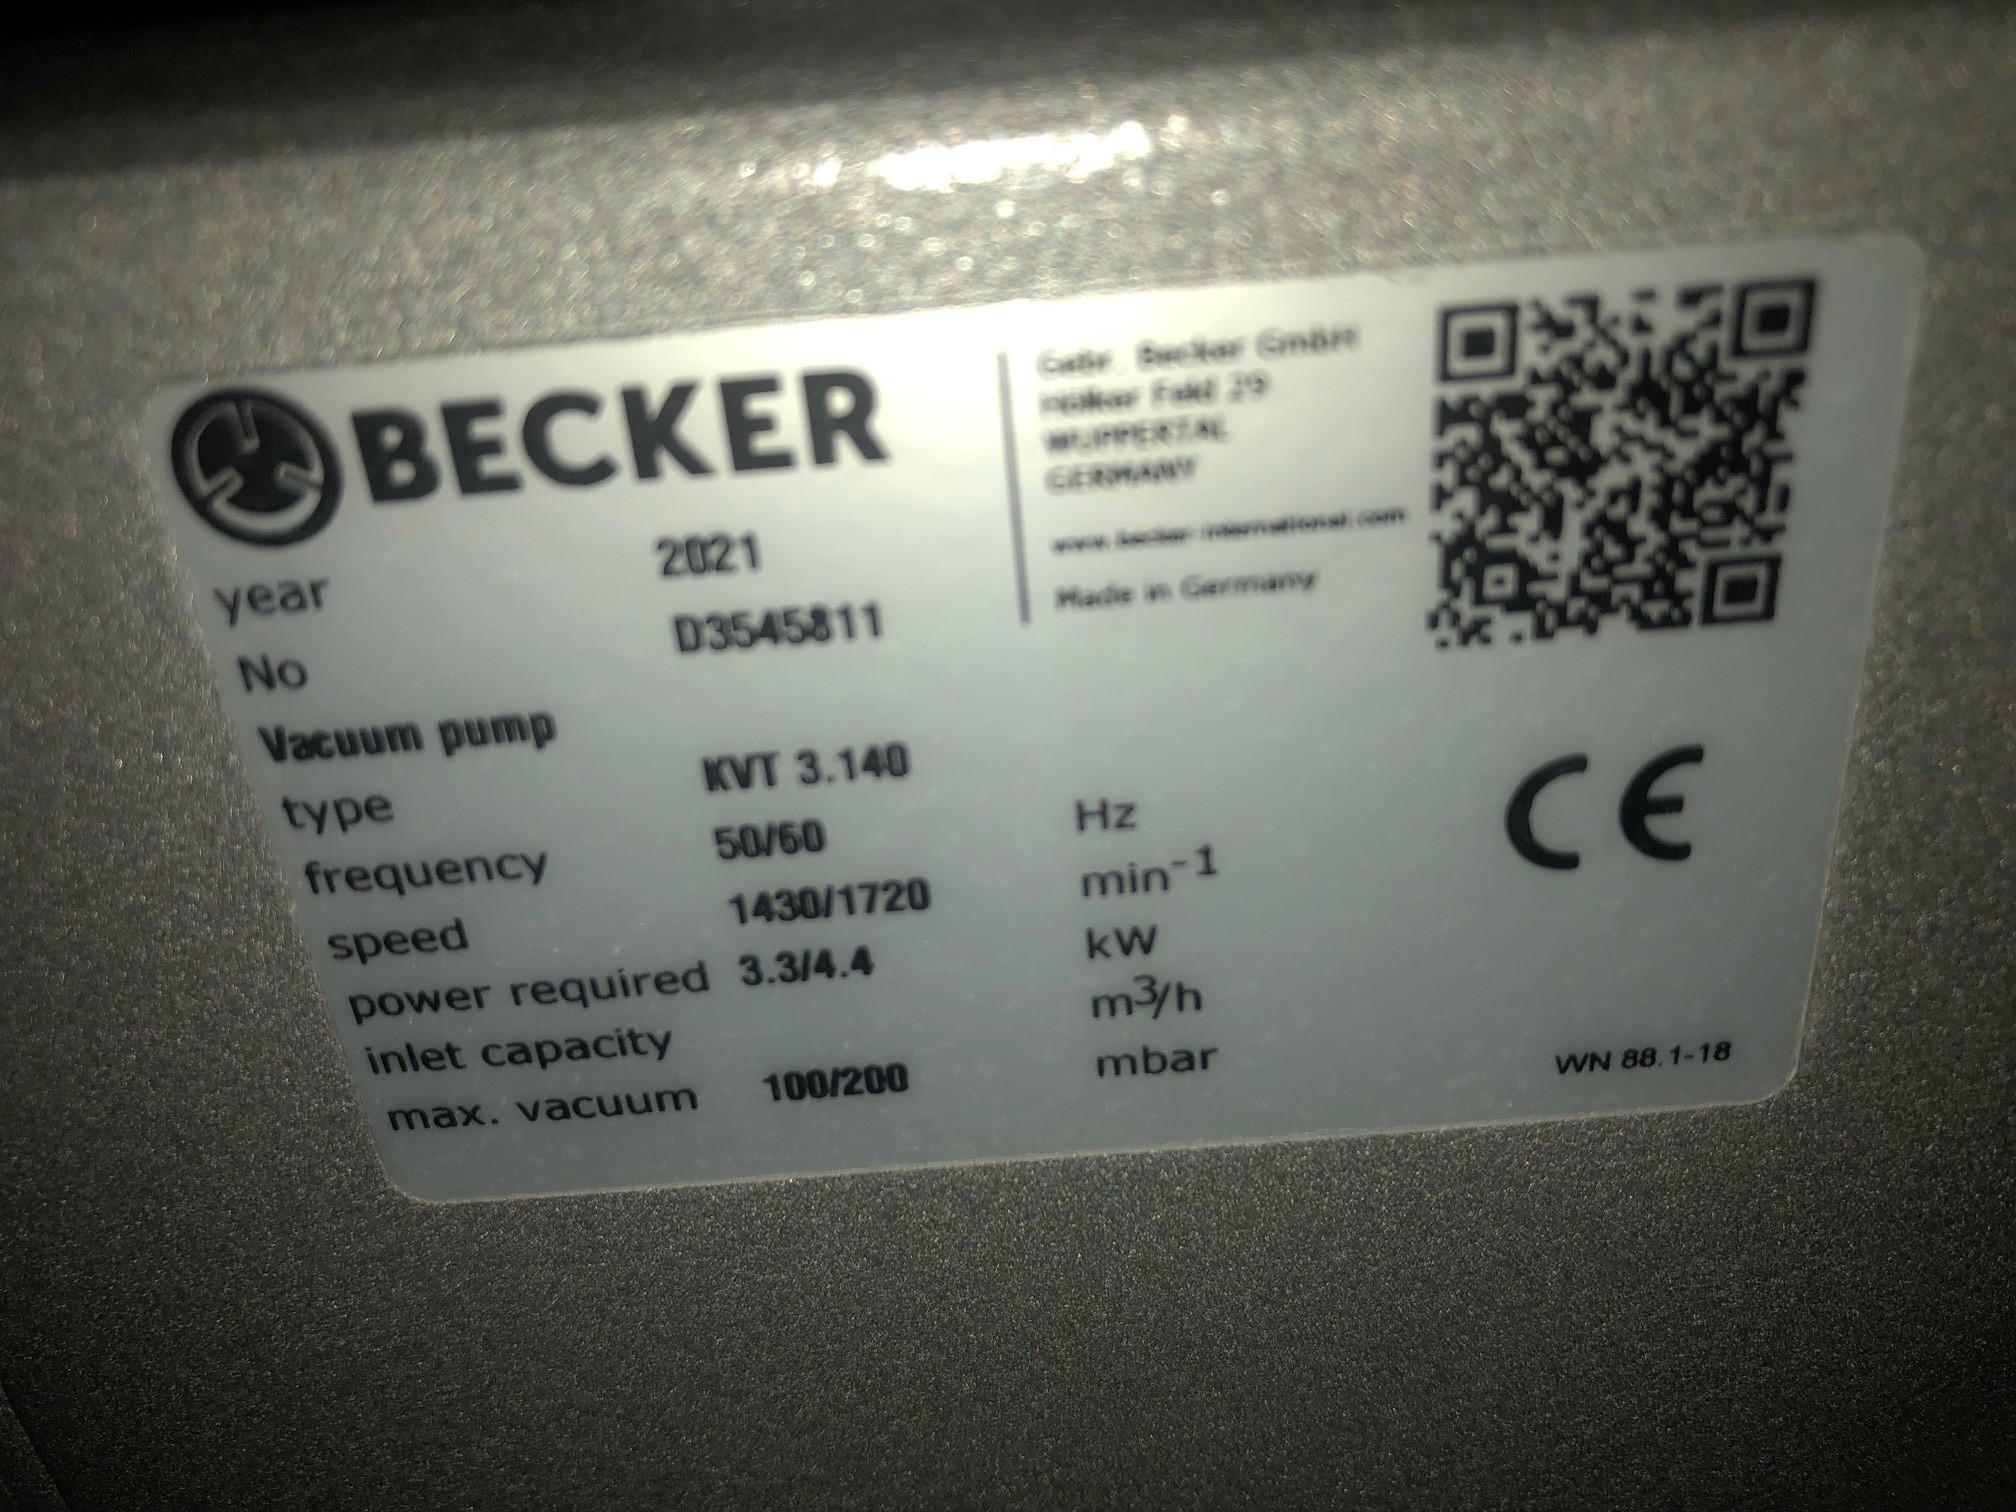 Becker KVT 3.140